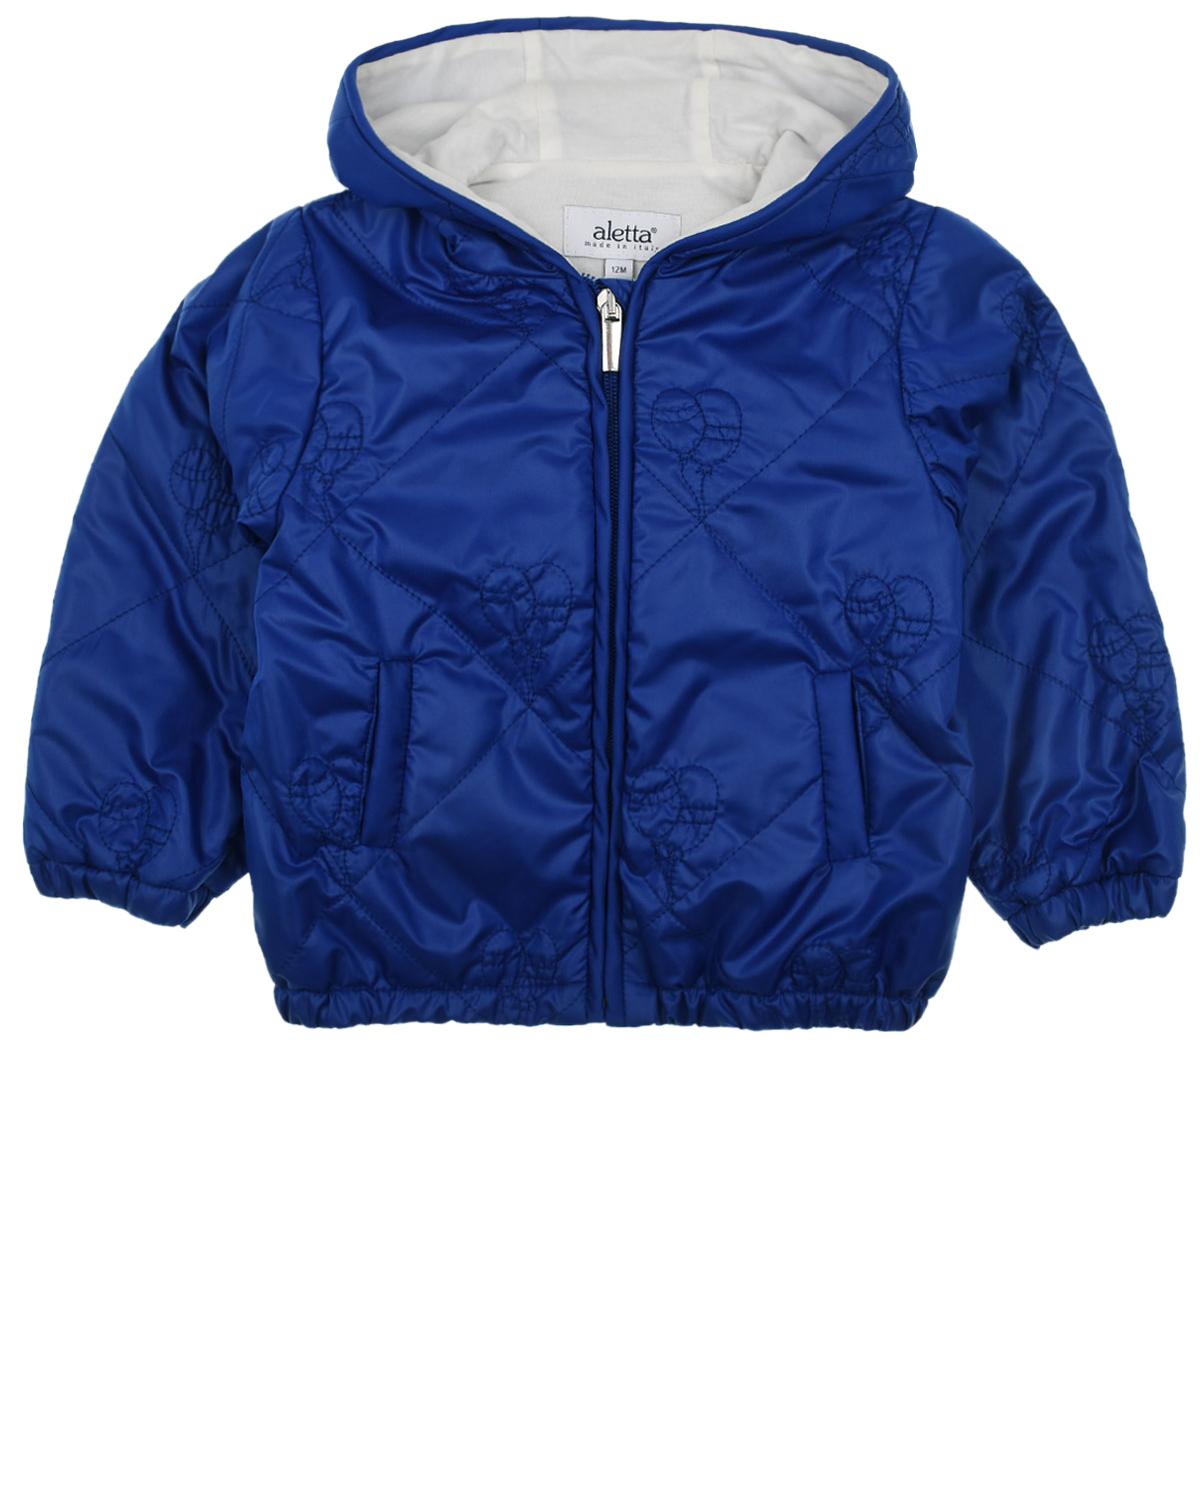 Синяя куртка с вышивкой "воздушные шары" Aletta детская, размер 92, цвет синий - фото 1